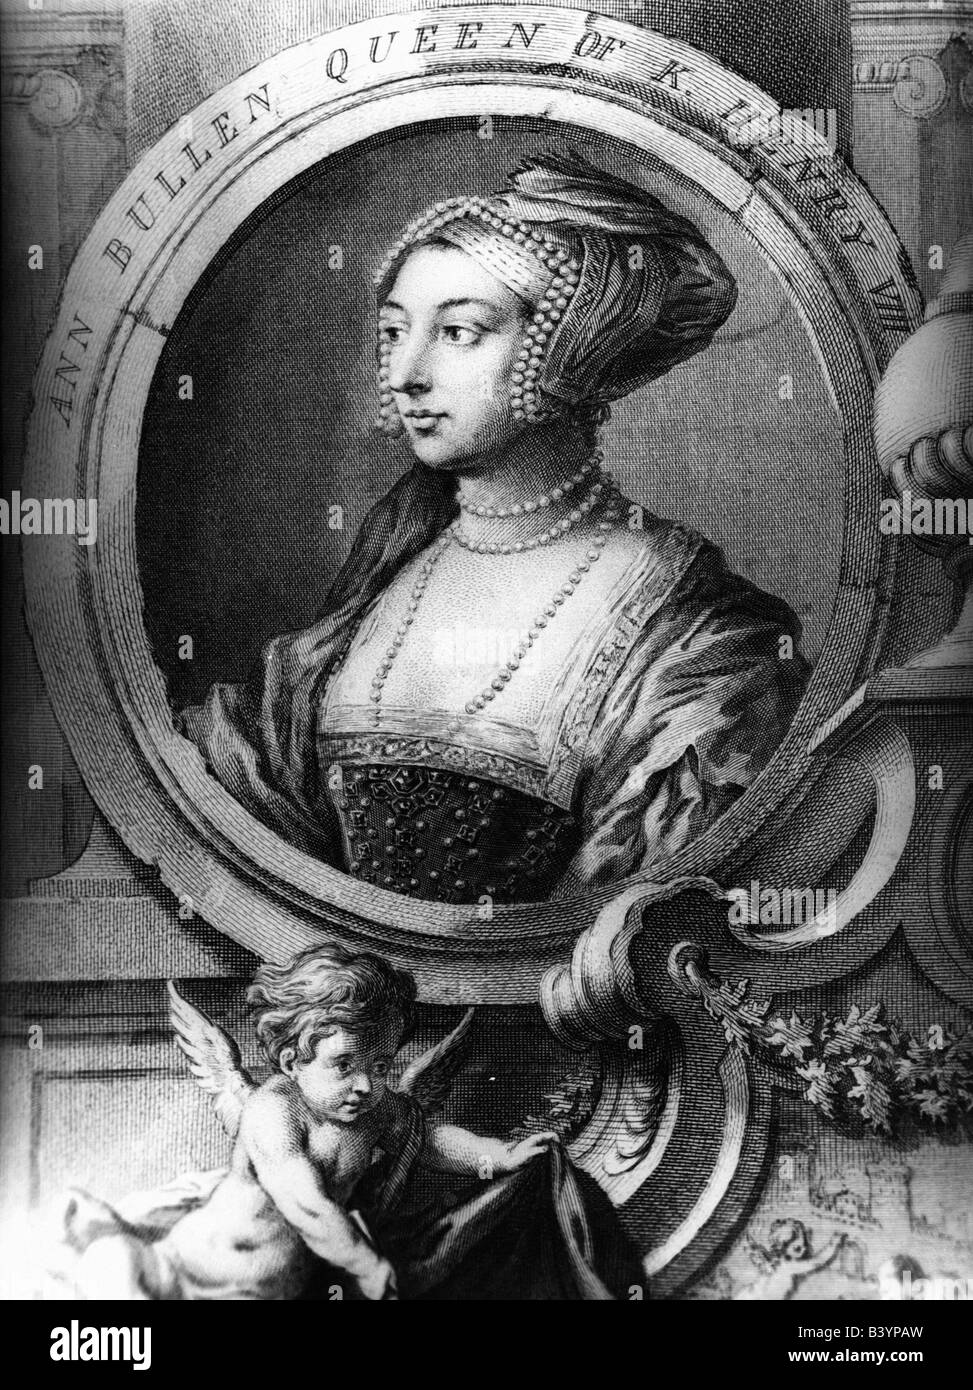 Anne Boleyn, vers 1505 - 19.5.1536, Reine Consort d'Angleterre 25.1.1533 - 19.5.1536, portrait, gravure sur acier, 19e siècle, l'artiste a le droit d'auteur , de ne pas être effacé Banque D'Images